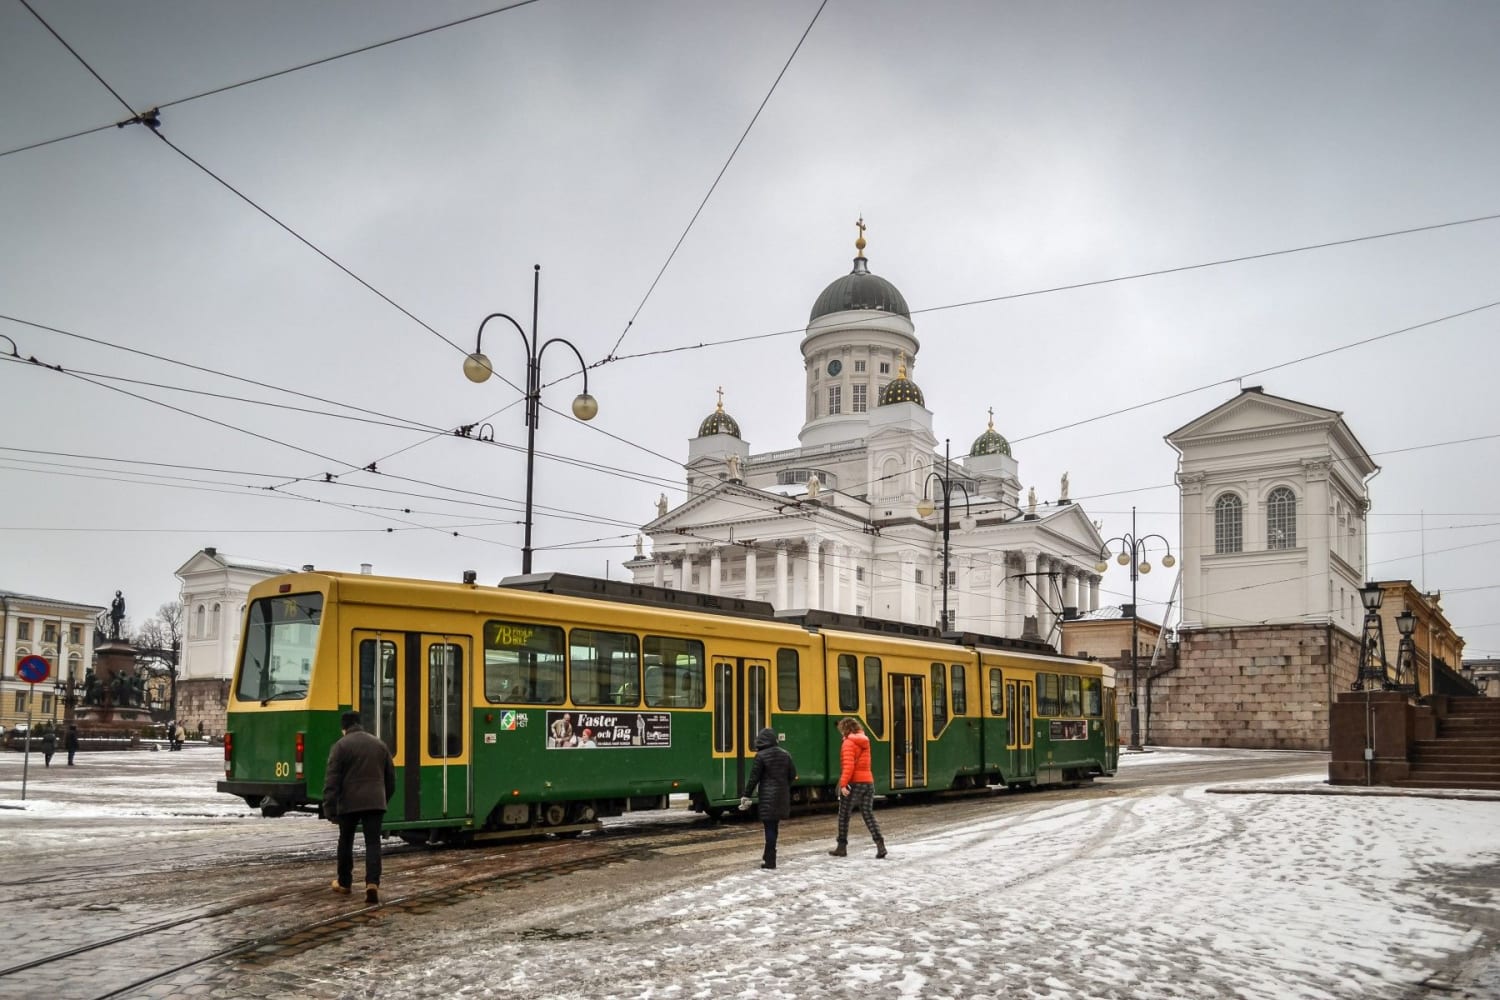 In pictures: Helsinki trams